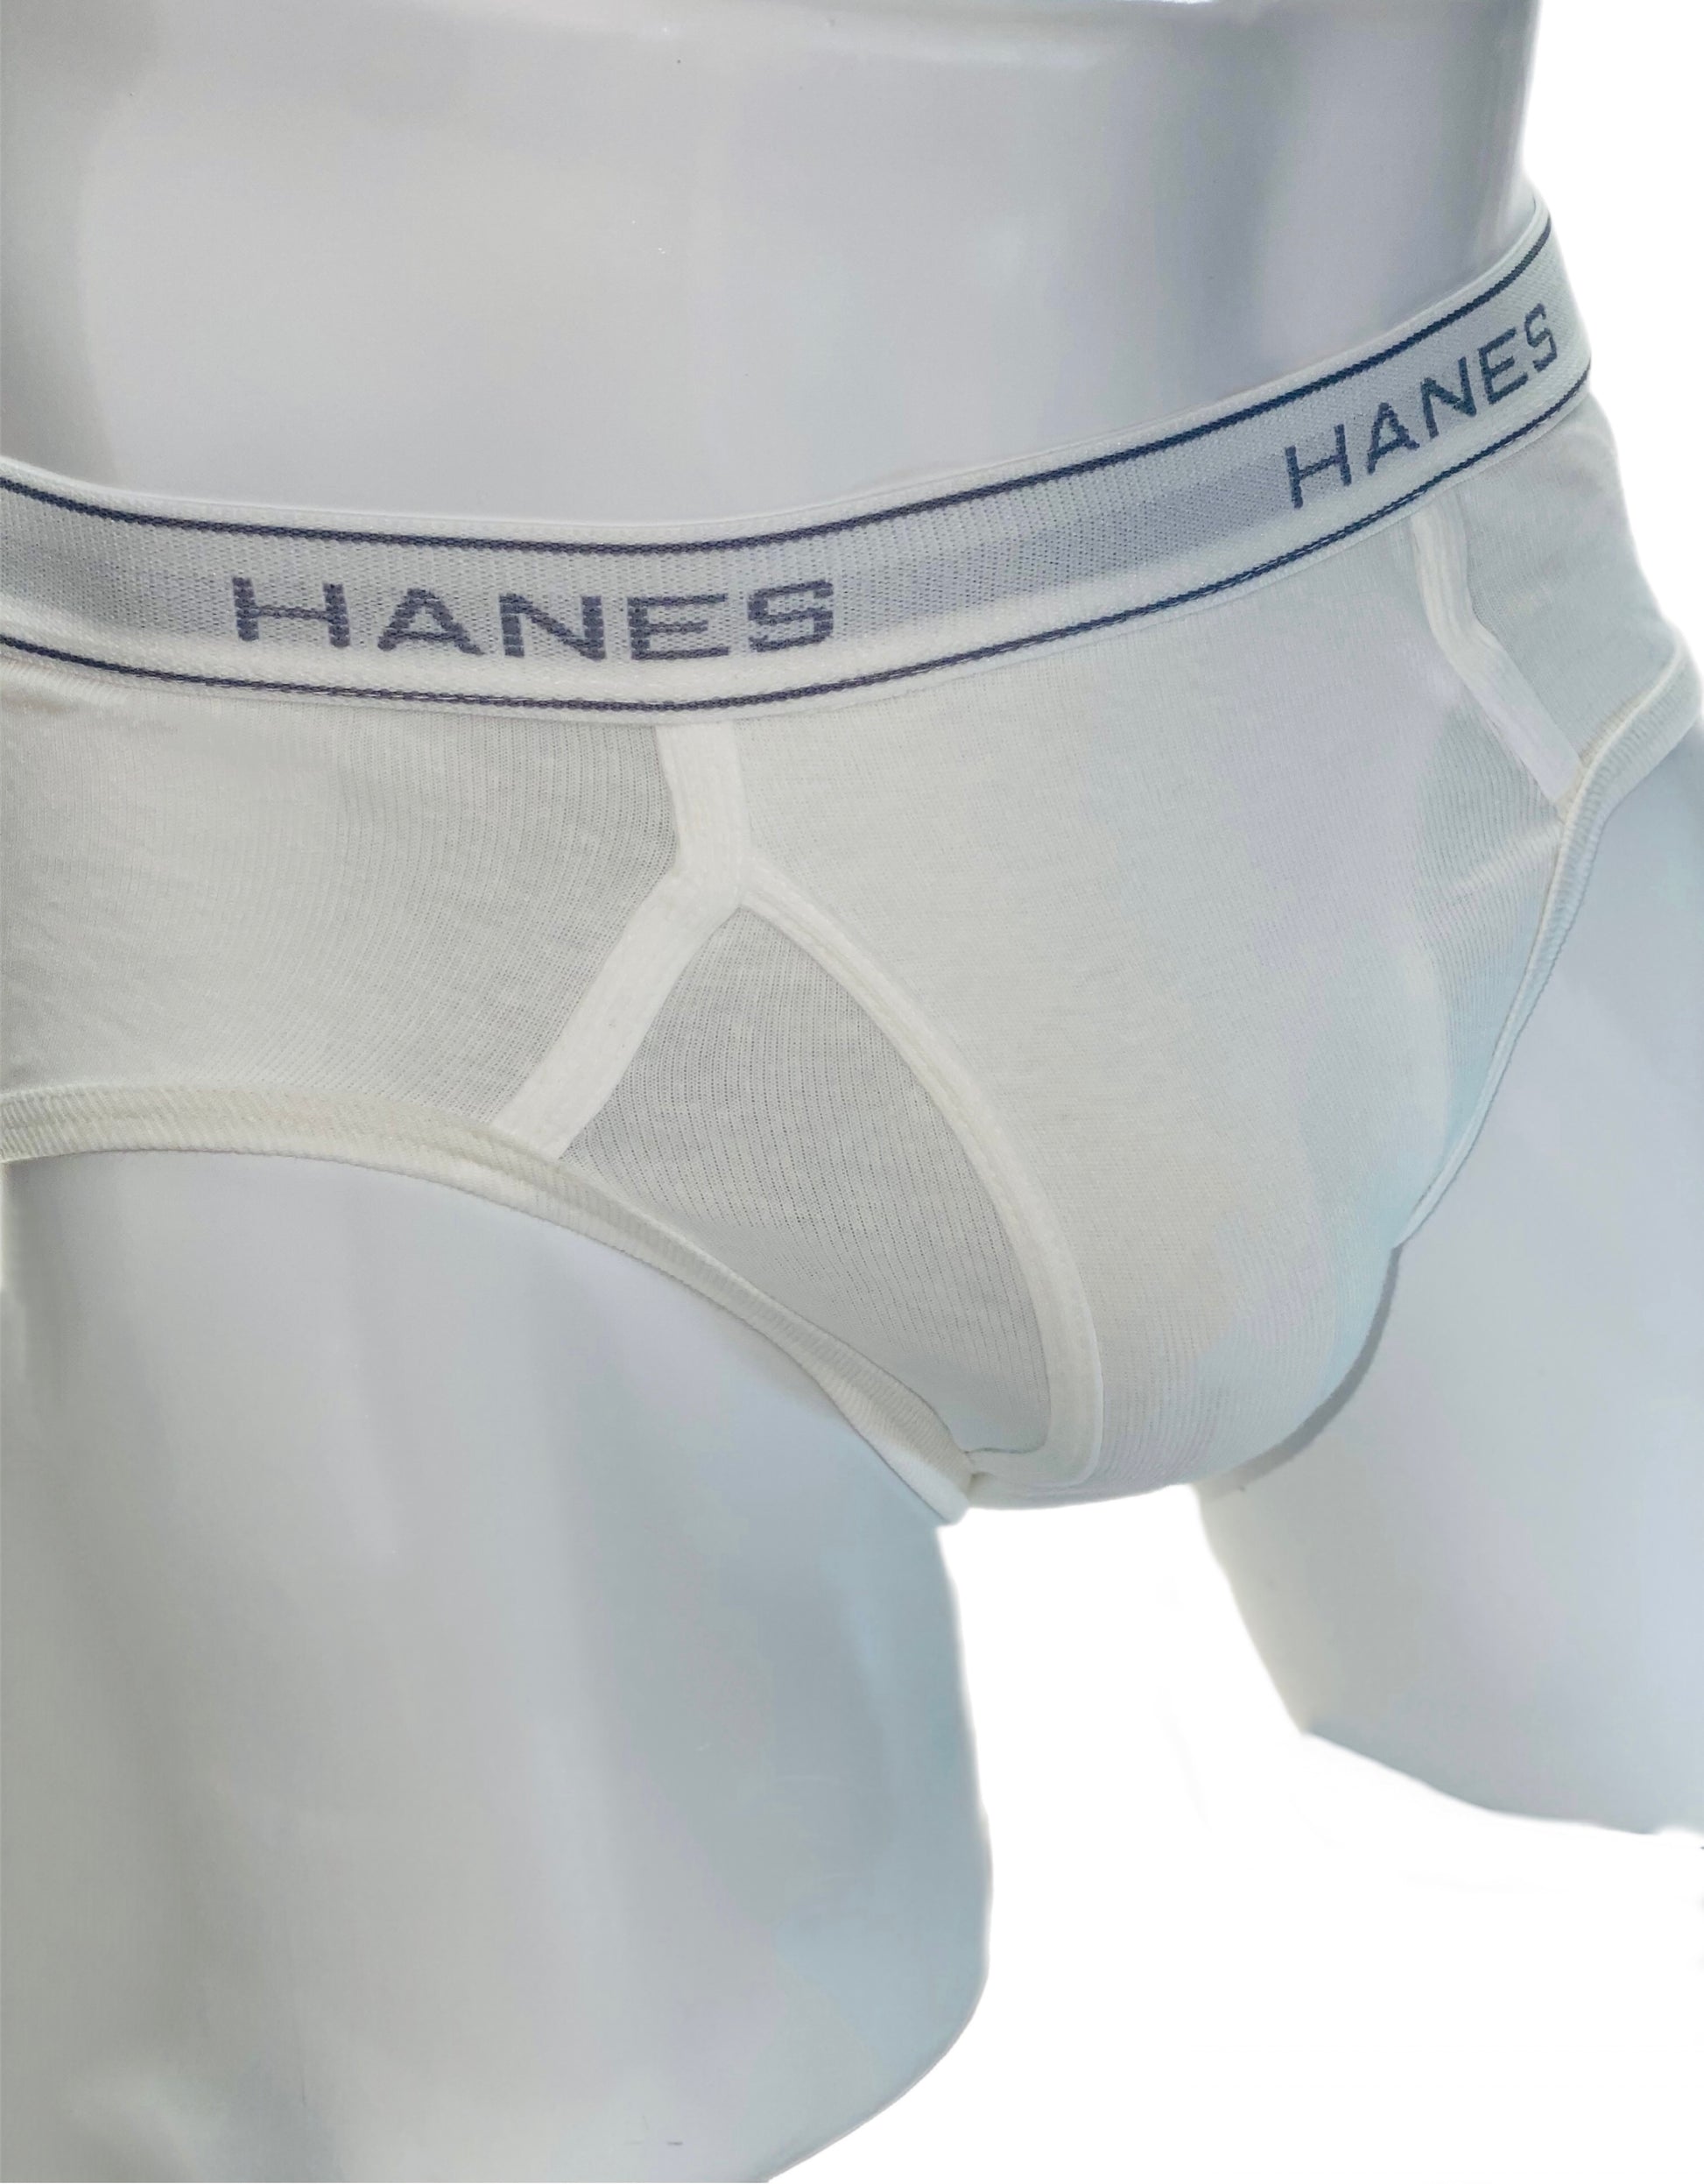 Hanes Tighty Whities, I found this underwear behind Redneck…